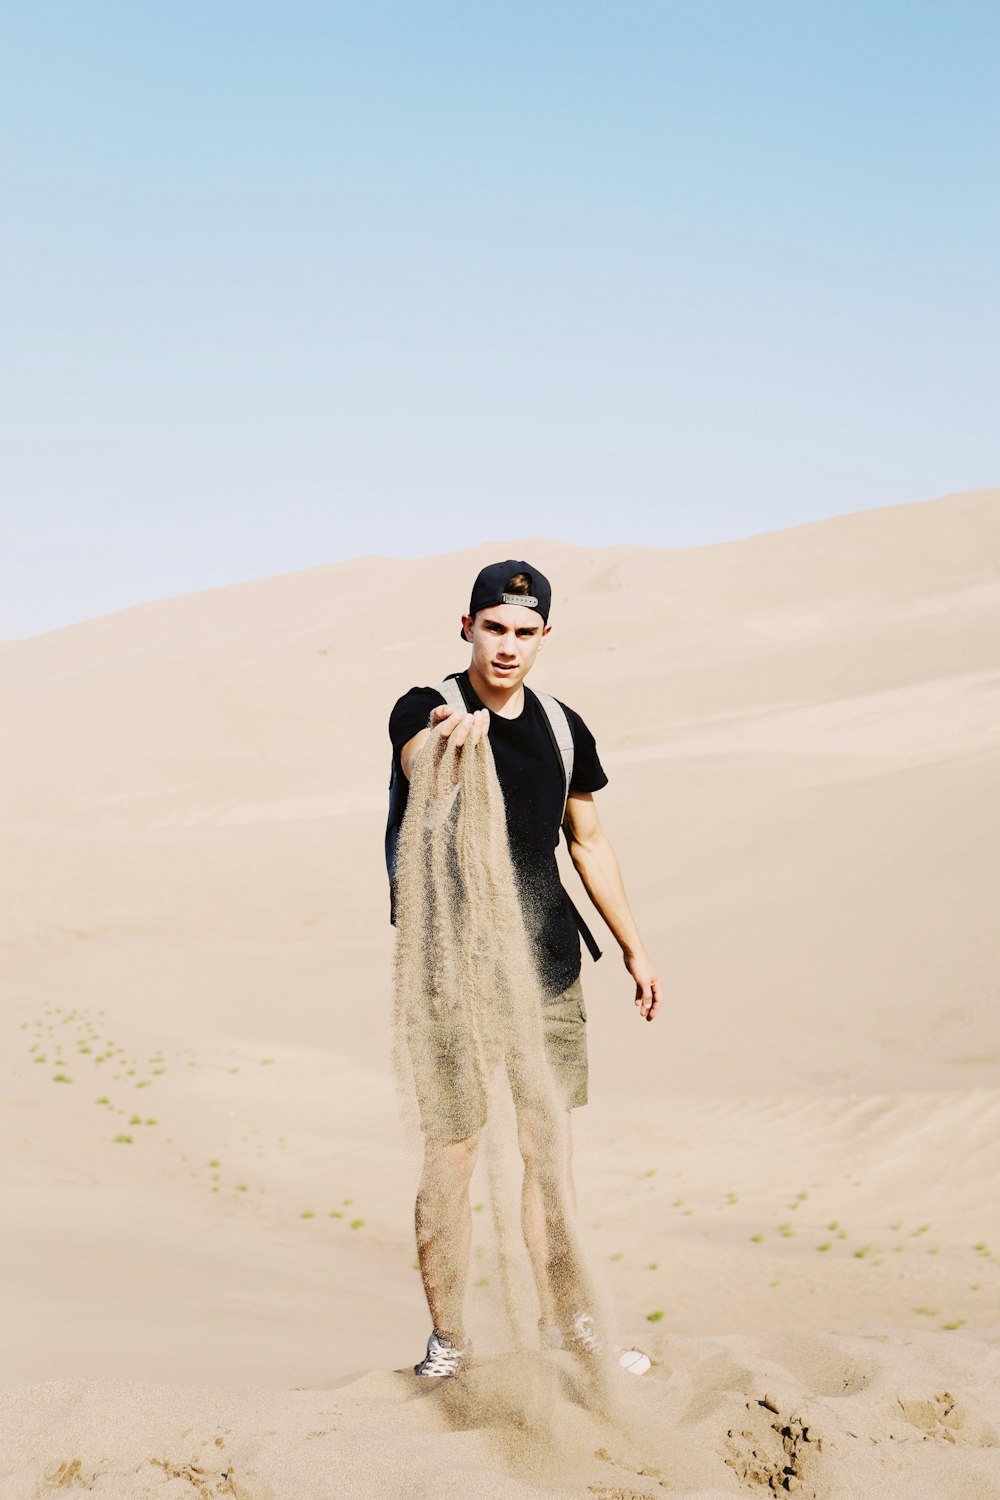 검은 셔츠를 입은 남자가 사막 랭에 서 있다